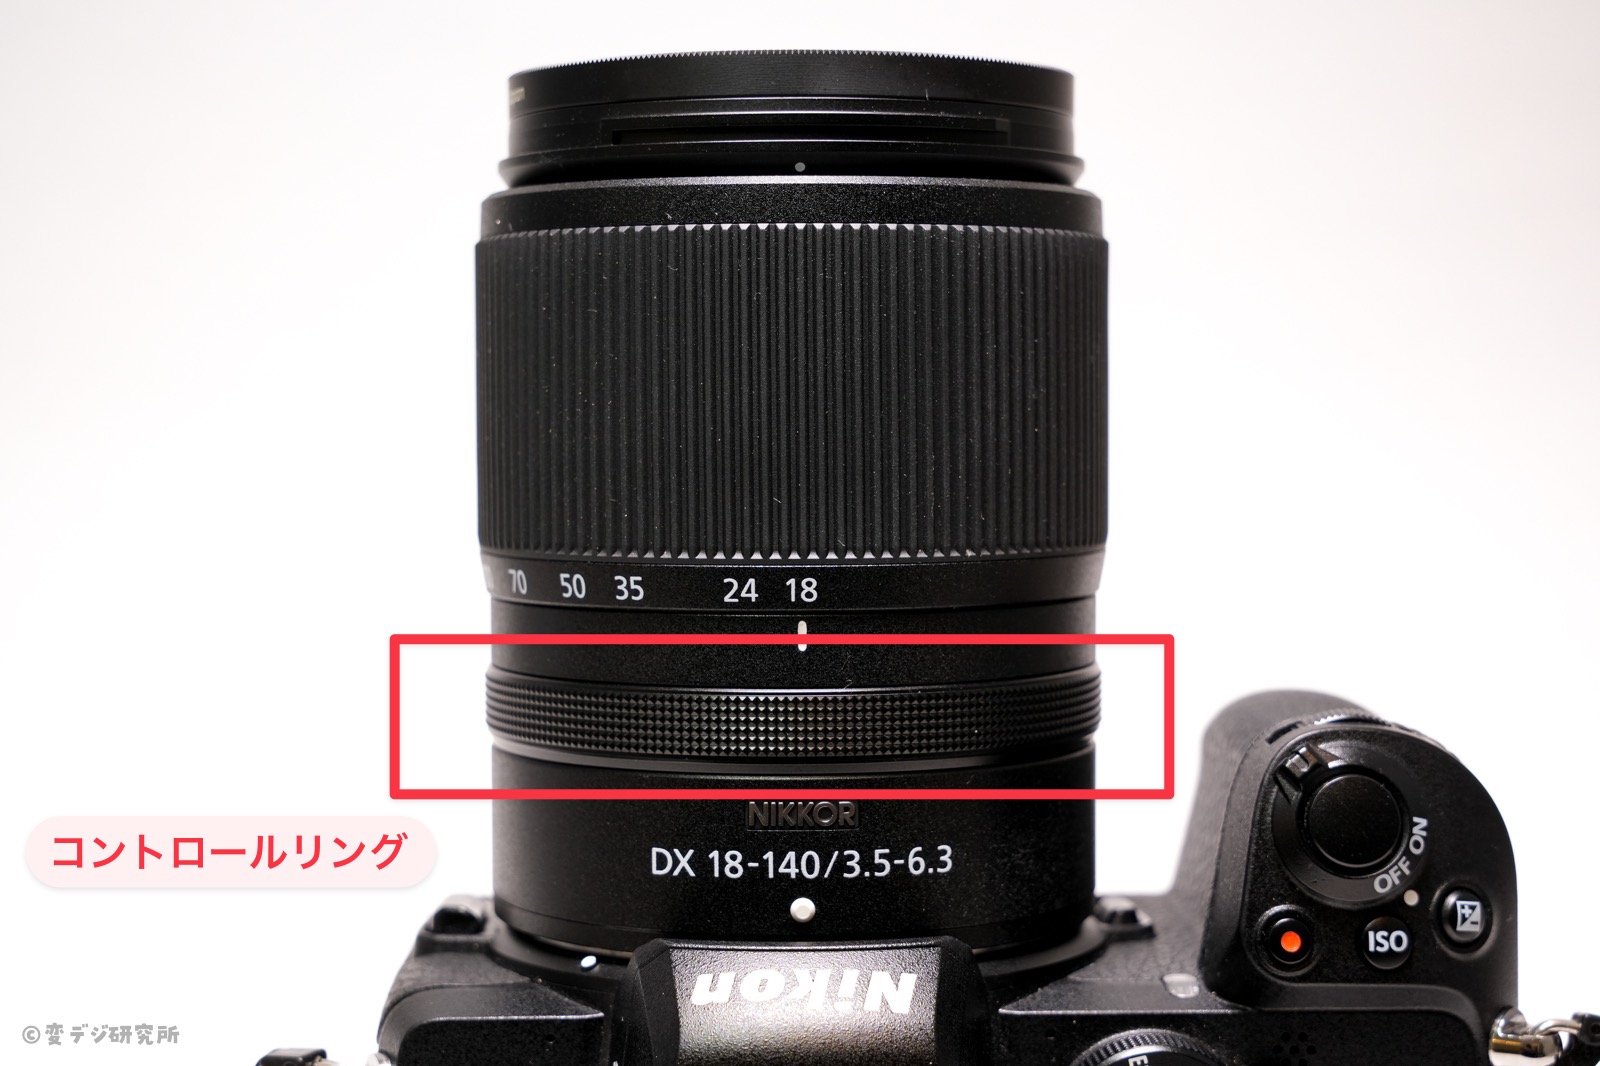 【レビュー】NIKKOR Z DX 18-140mm f/3.5-6.3 VR